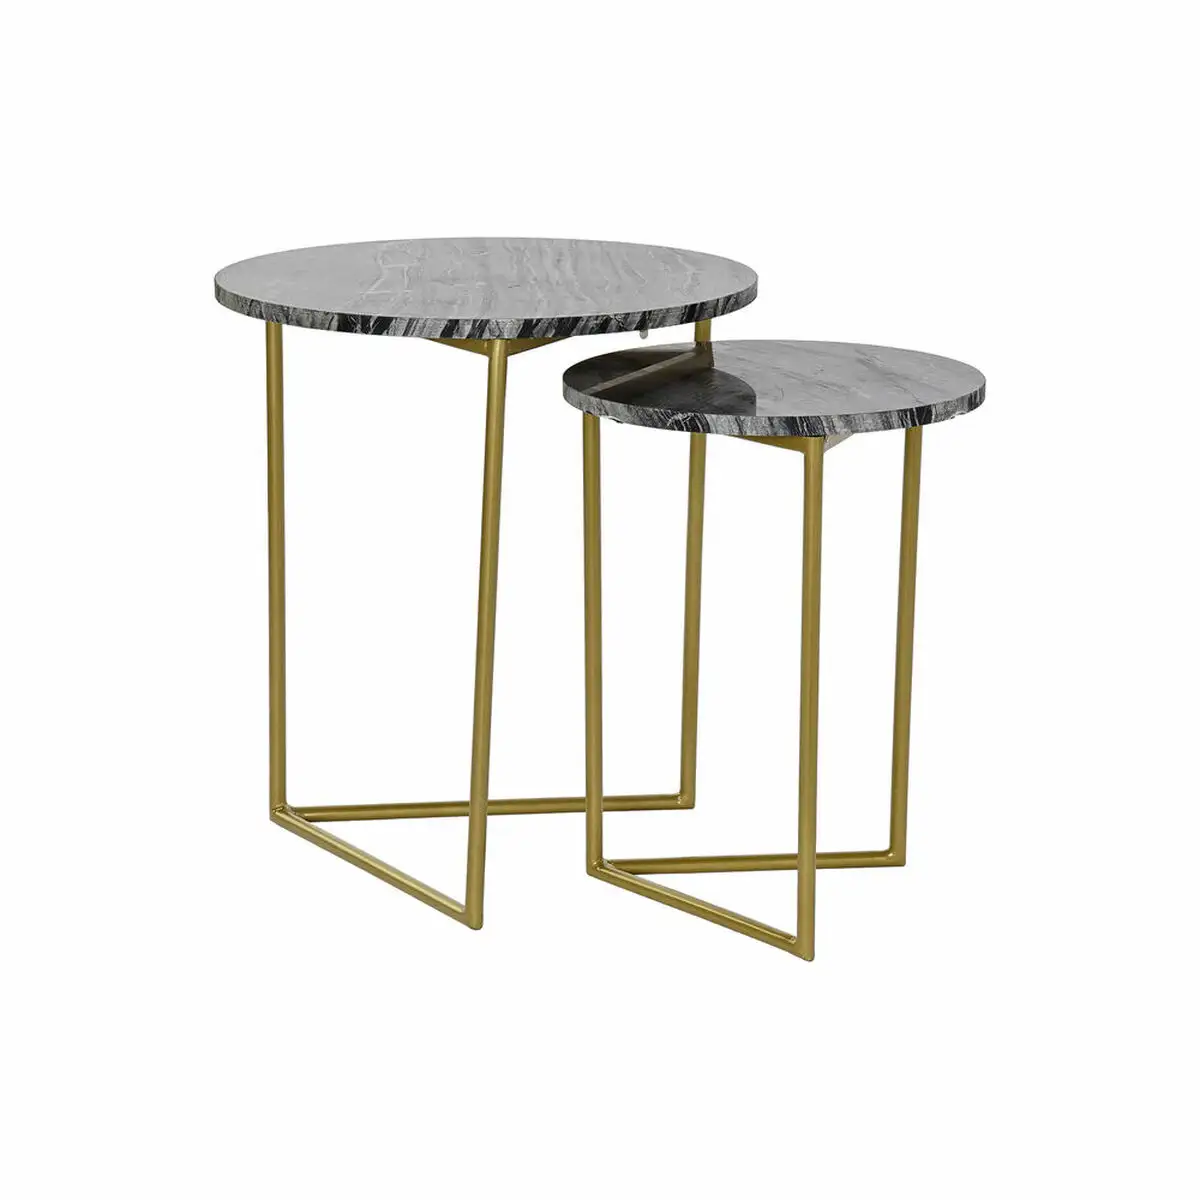 Set de 2 tables gigognes dkd home decor 40 x 40 x 45 cm noir dore metal marbre_6032. DIAYTAR SENEGAL - L'Art de Trouver ce que Vous Aimez. Plongez dans notre assortiment varié et choisissez parmi des produits qui reflètent votre style et répondent à vos besoins.